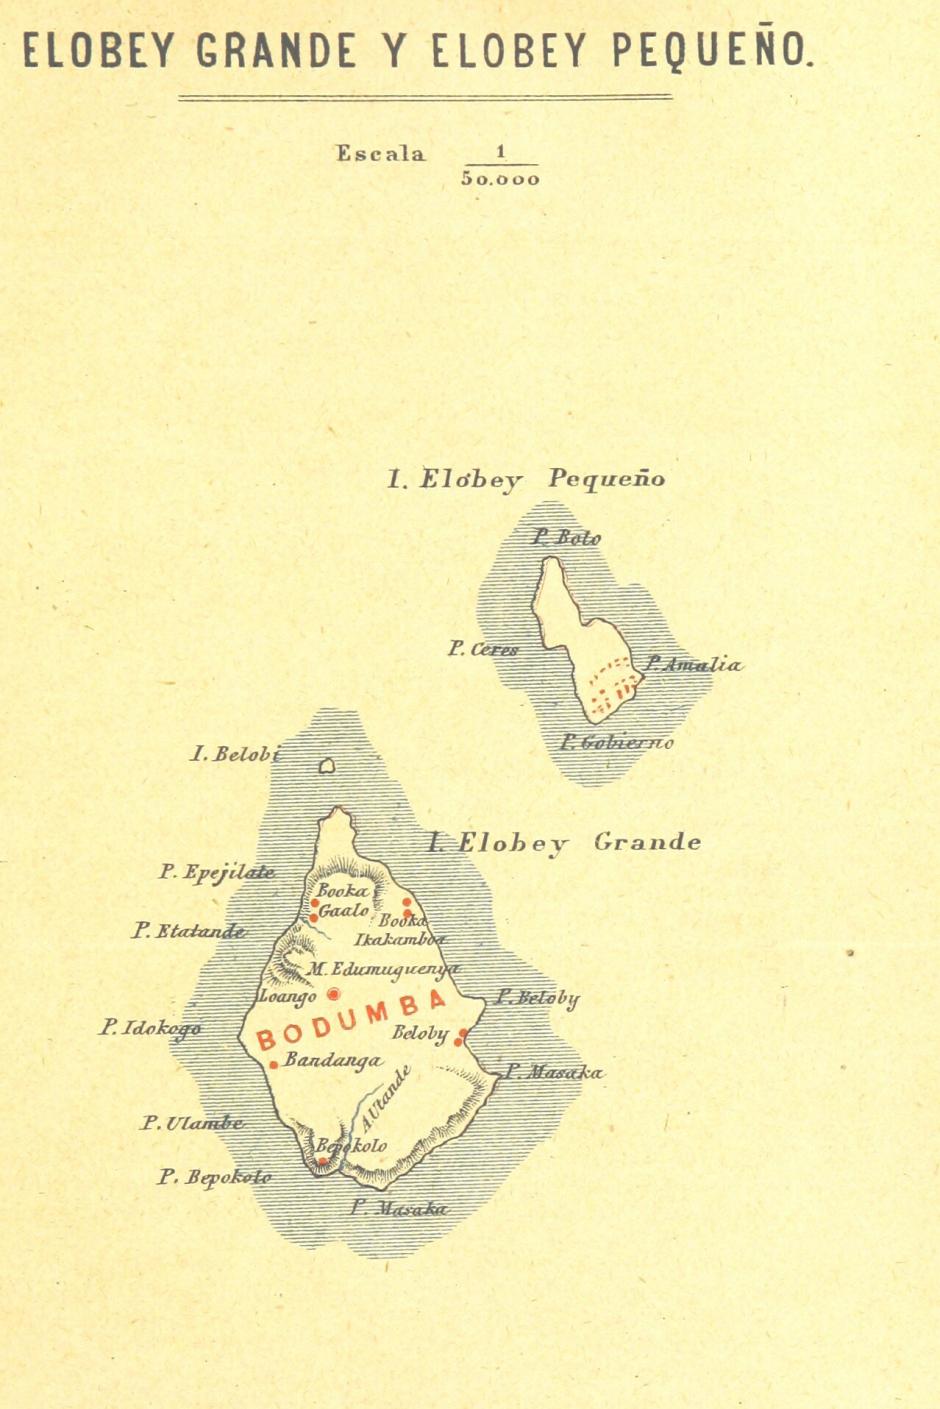 Las islas de Elobey Grande y Elobey Pequeño